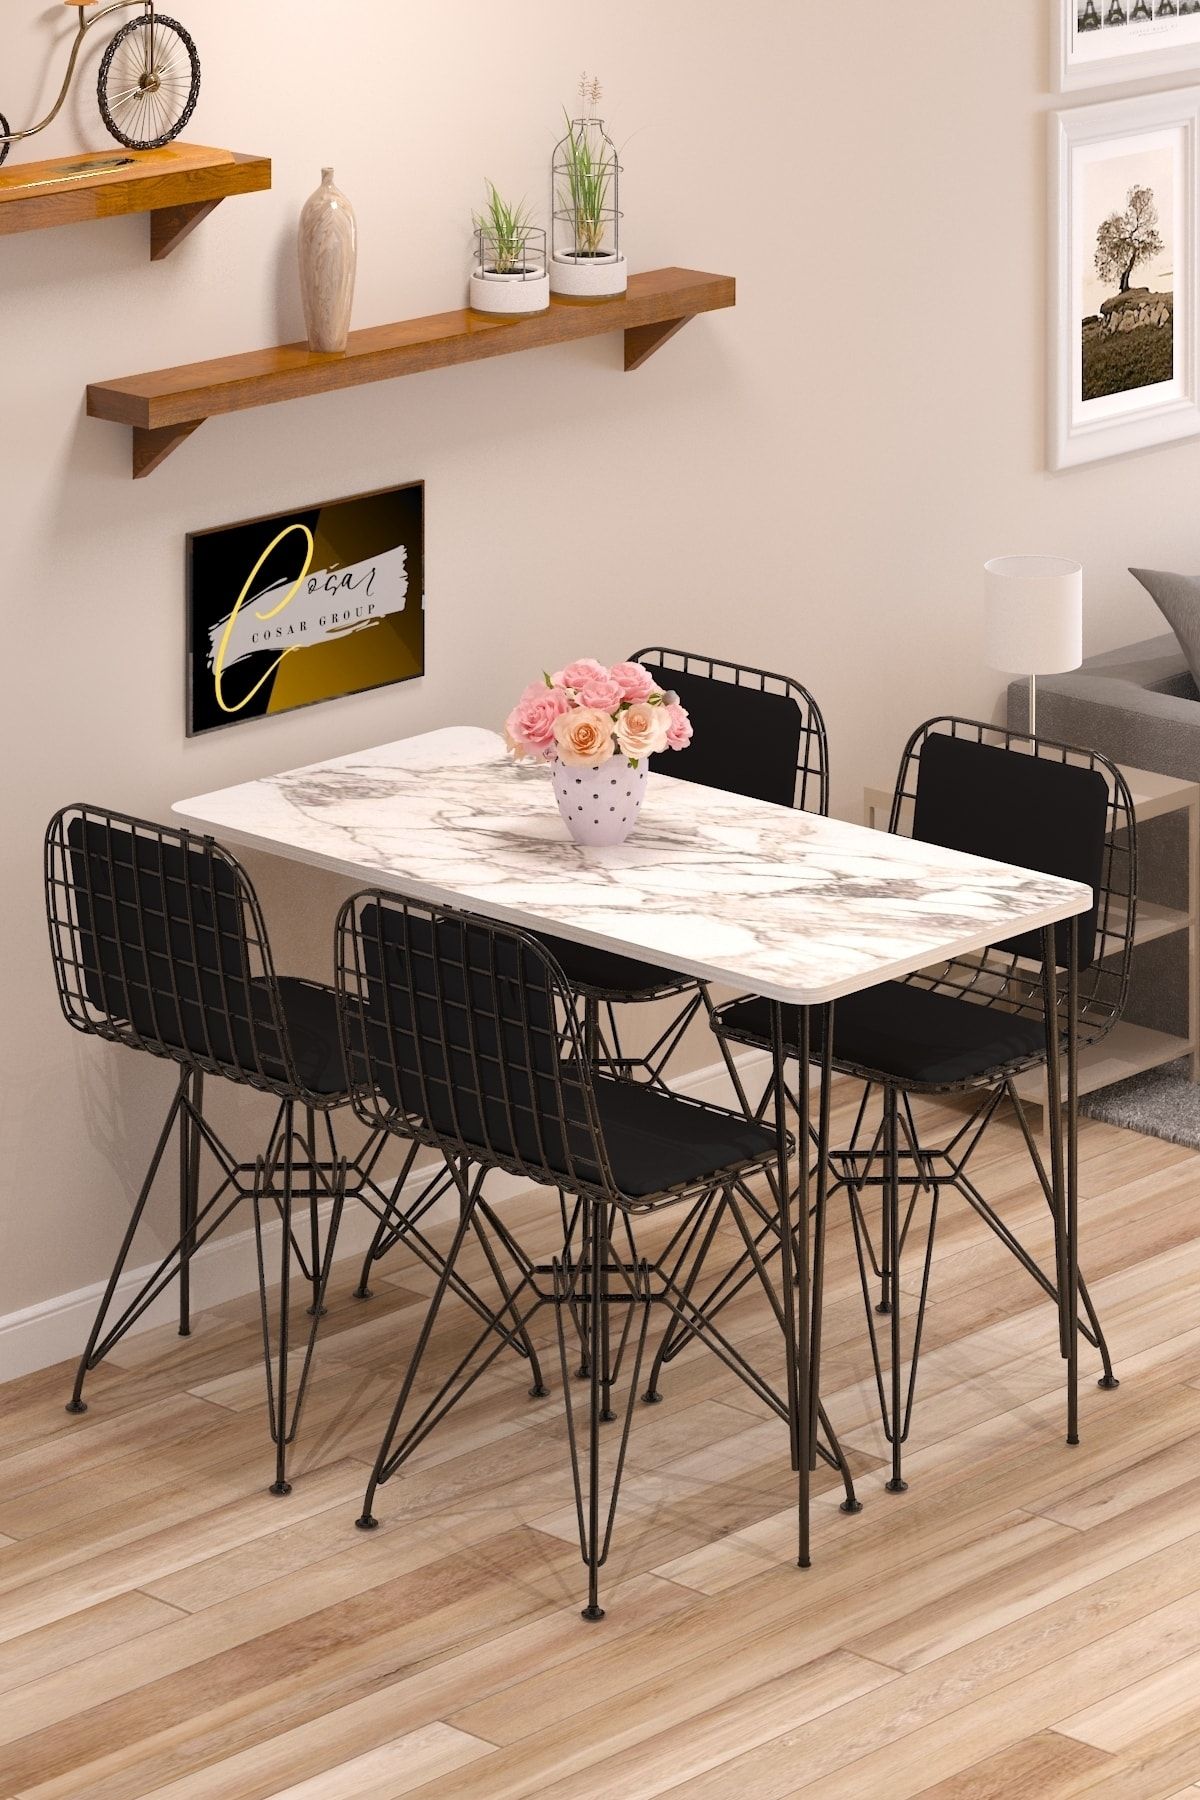 Cosargroup Yemek Masa Takımı Mutfak Masası Sırt Minderli 4 Adet Tel Sandalye 1 Adet Masa 60x120 Beyaz Gri